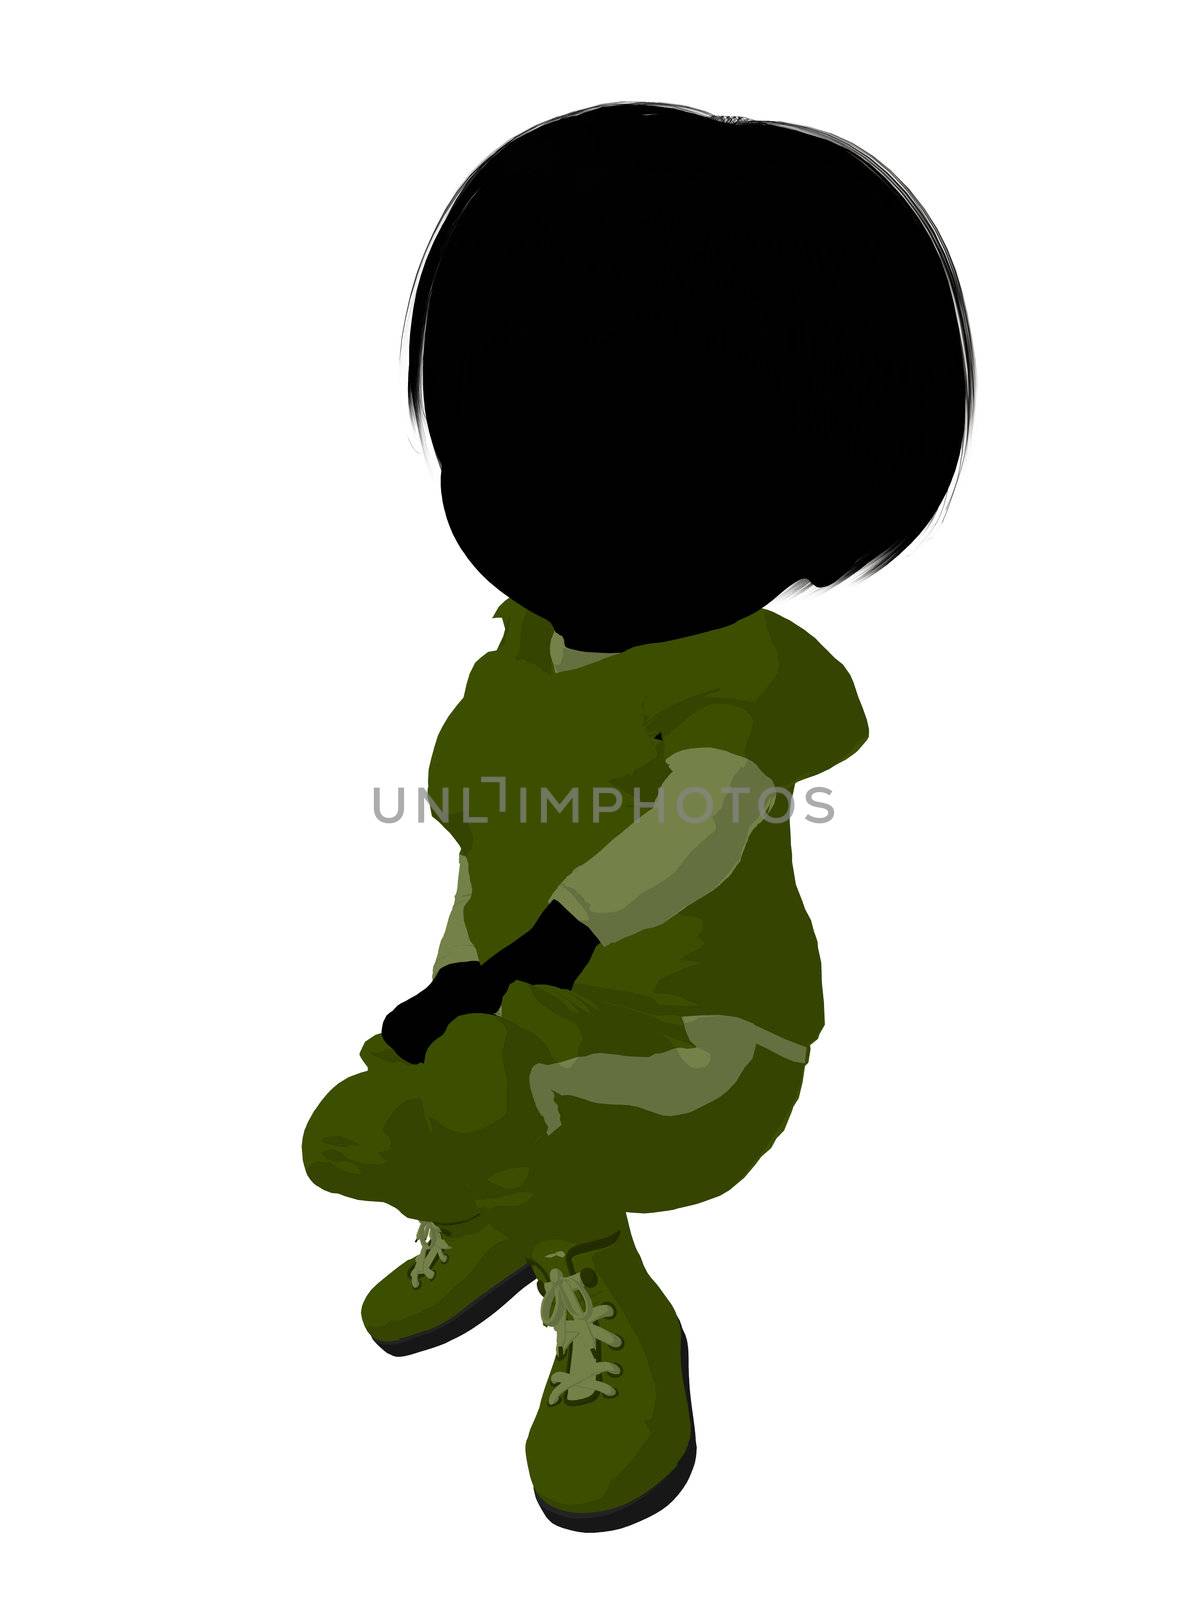 Little Football Girl Illustration Silhouette by kathygold